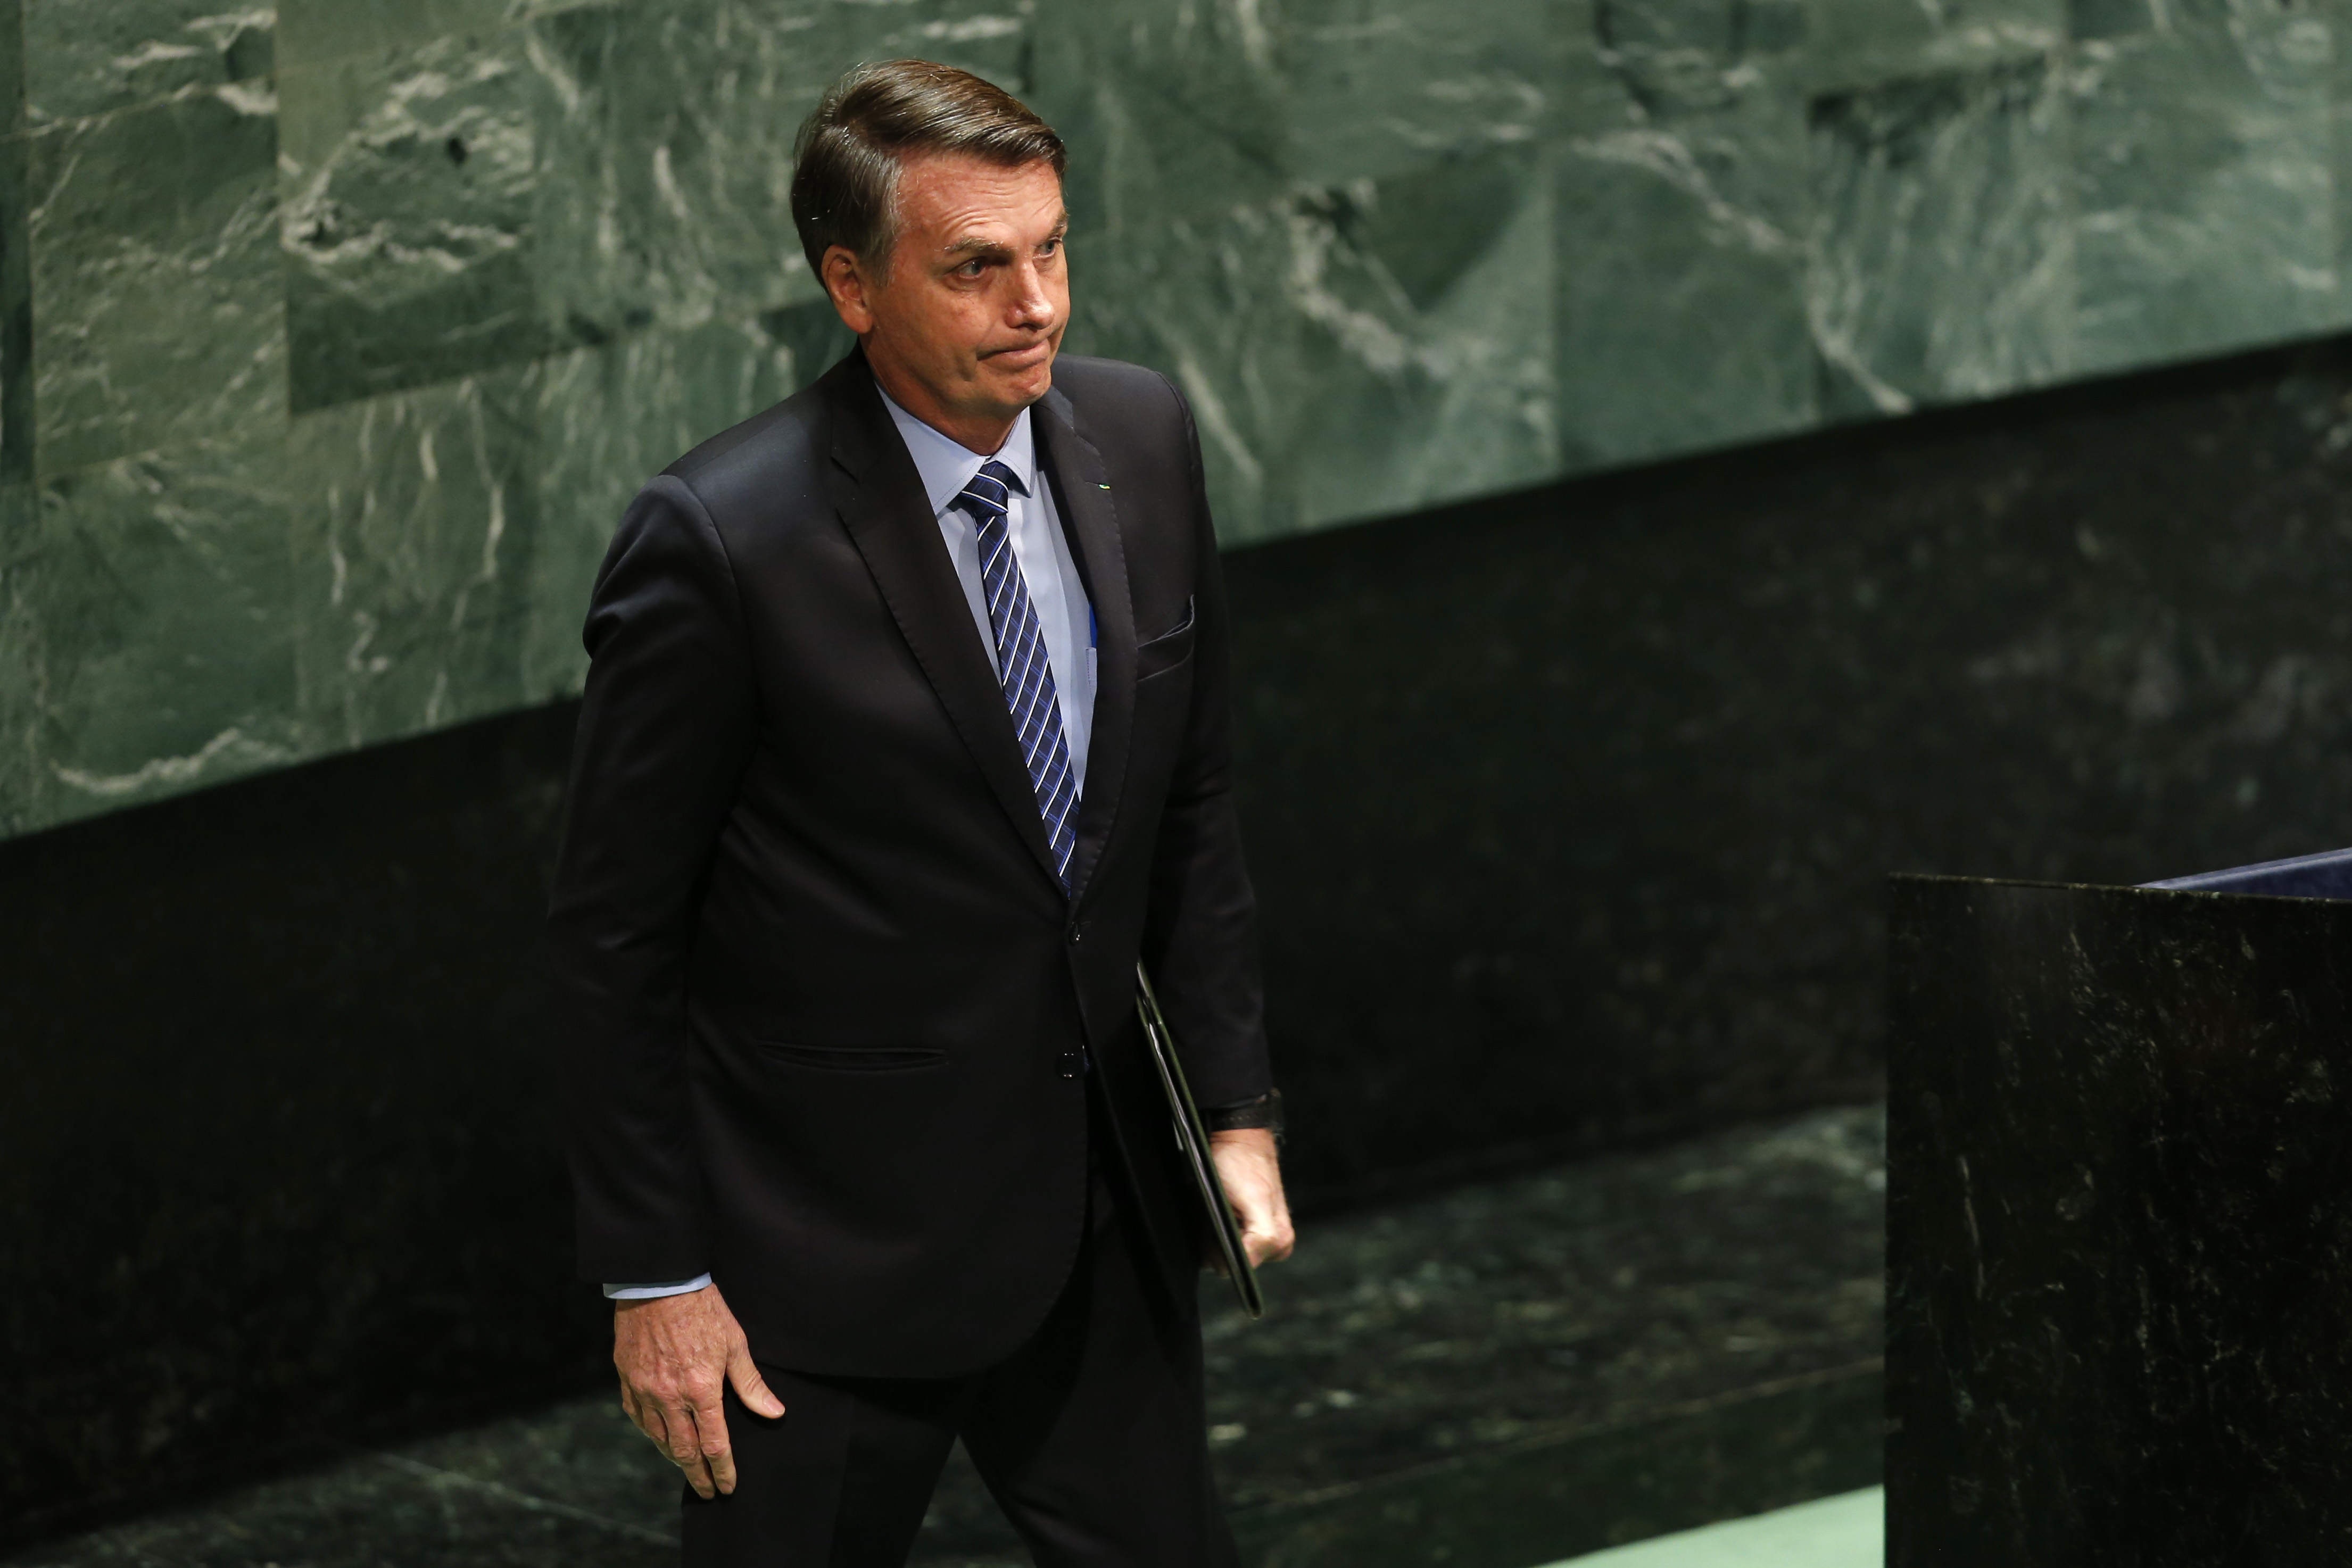 Nueva York 24 de septiembre 2019

El Presidente de Brasil, Jair Bolsonaro interviene en el 74¡ Debate General de la Asamblea General de Naciones Unidas.

Javier Torres/Aton Chile